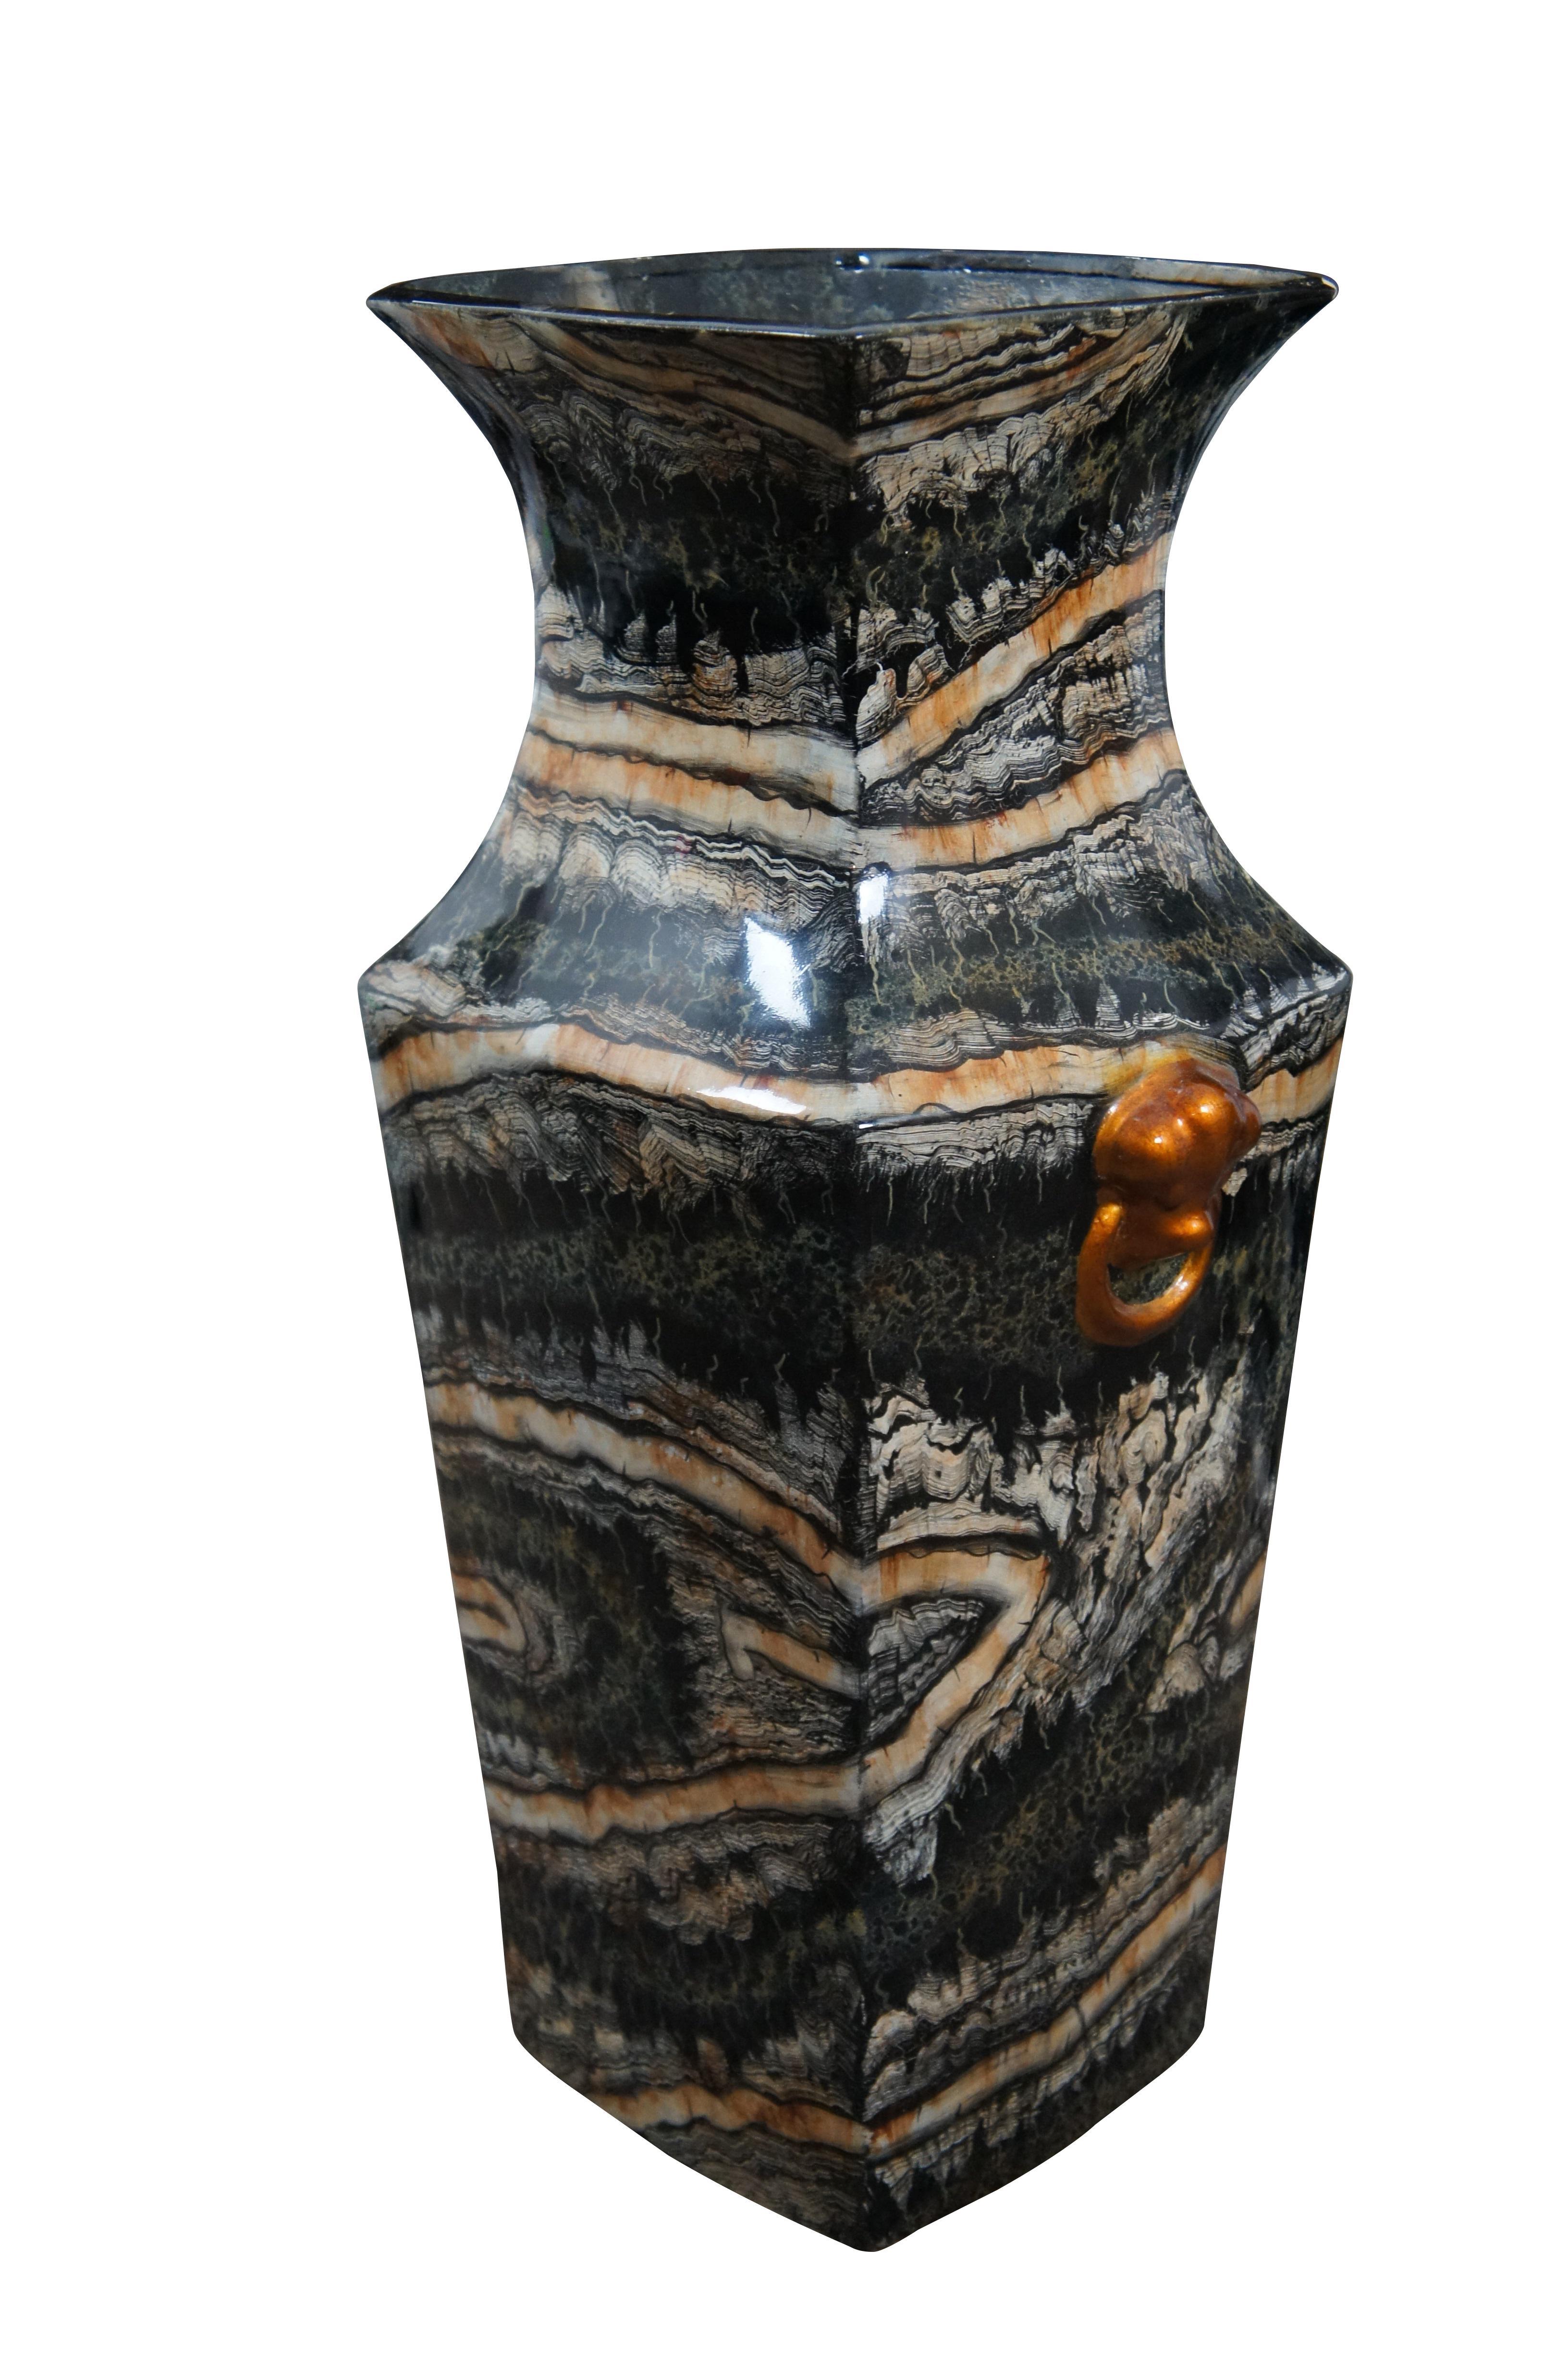 Vase de sol Maitland Smith de la fin du 20e siècle, présentant une forme de vase quadrillé traditionnel de la famille chinoise et un heurtoir en fausse coquille Saint-Jacques avec des poignées en anneau, peints en cuivre. En porcelaine / céramique